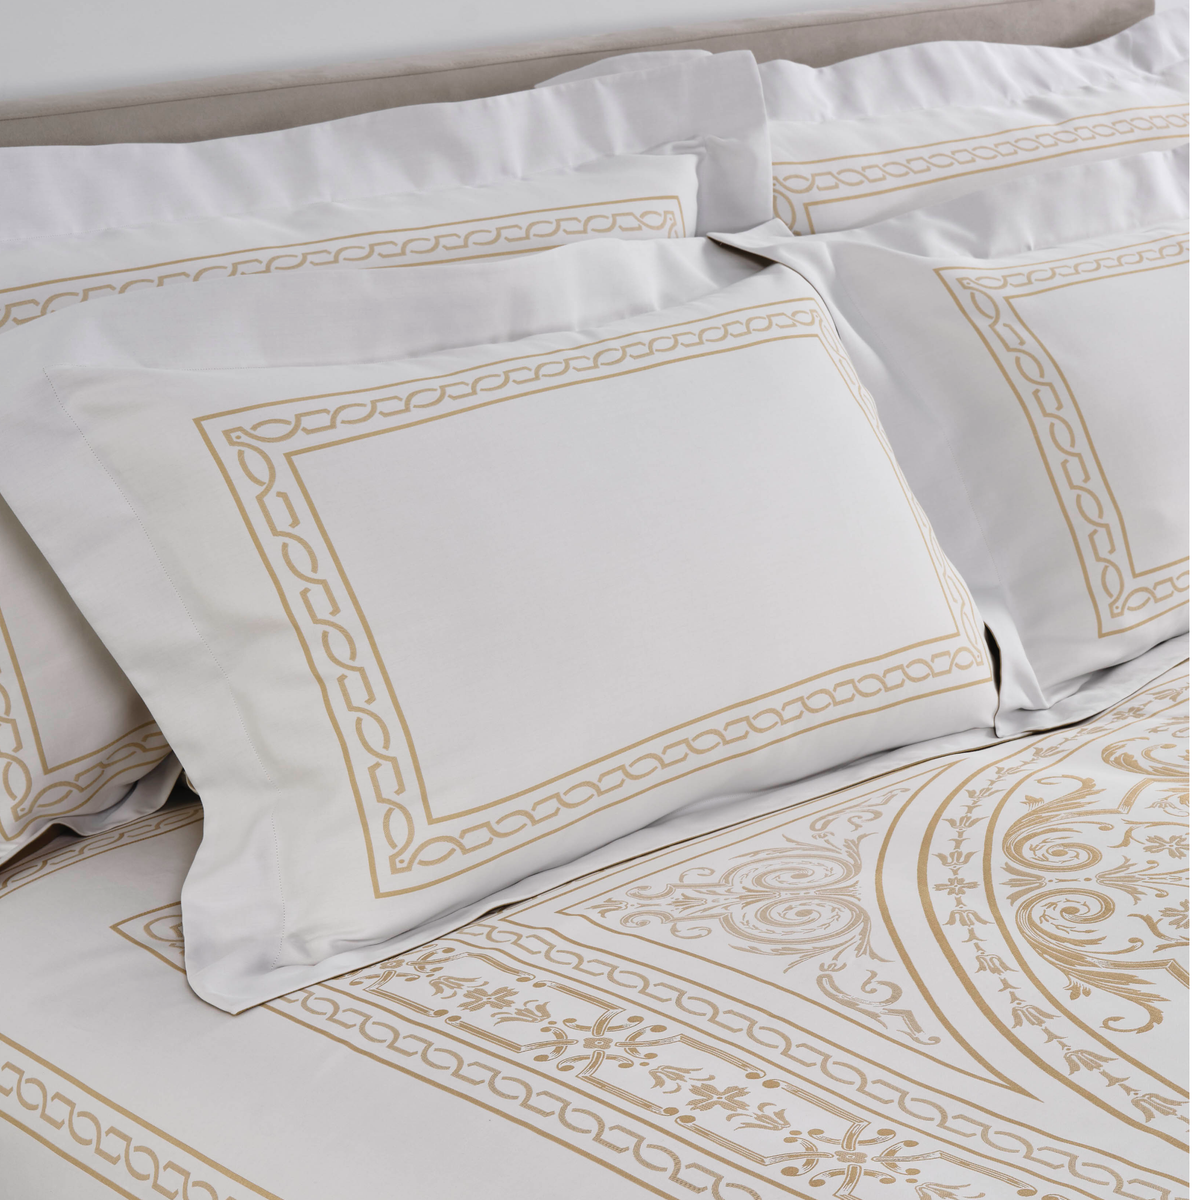 Pillowcases Closeup of Celso de Lemos Versailles Bedding in Miel Color